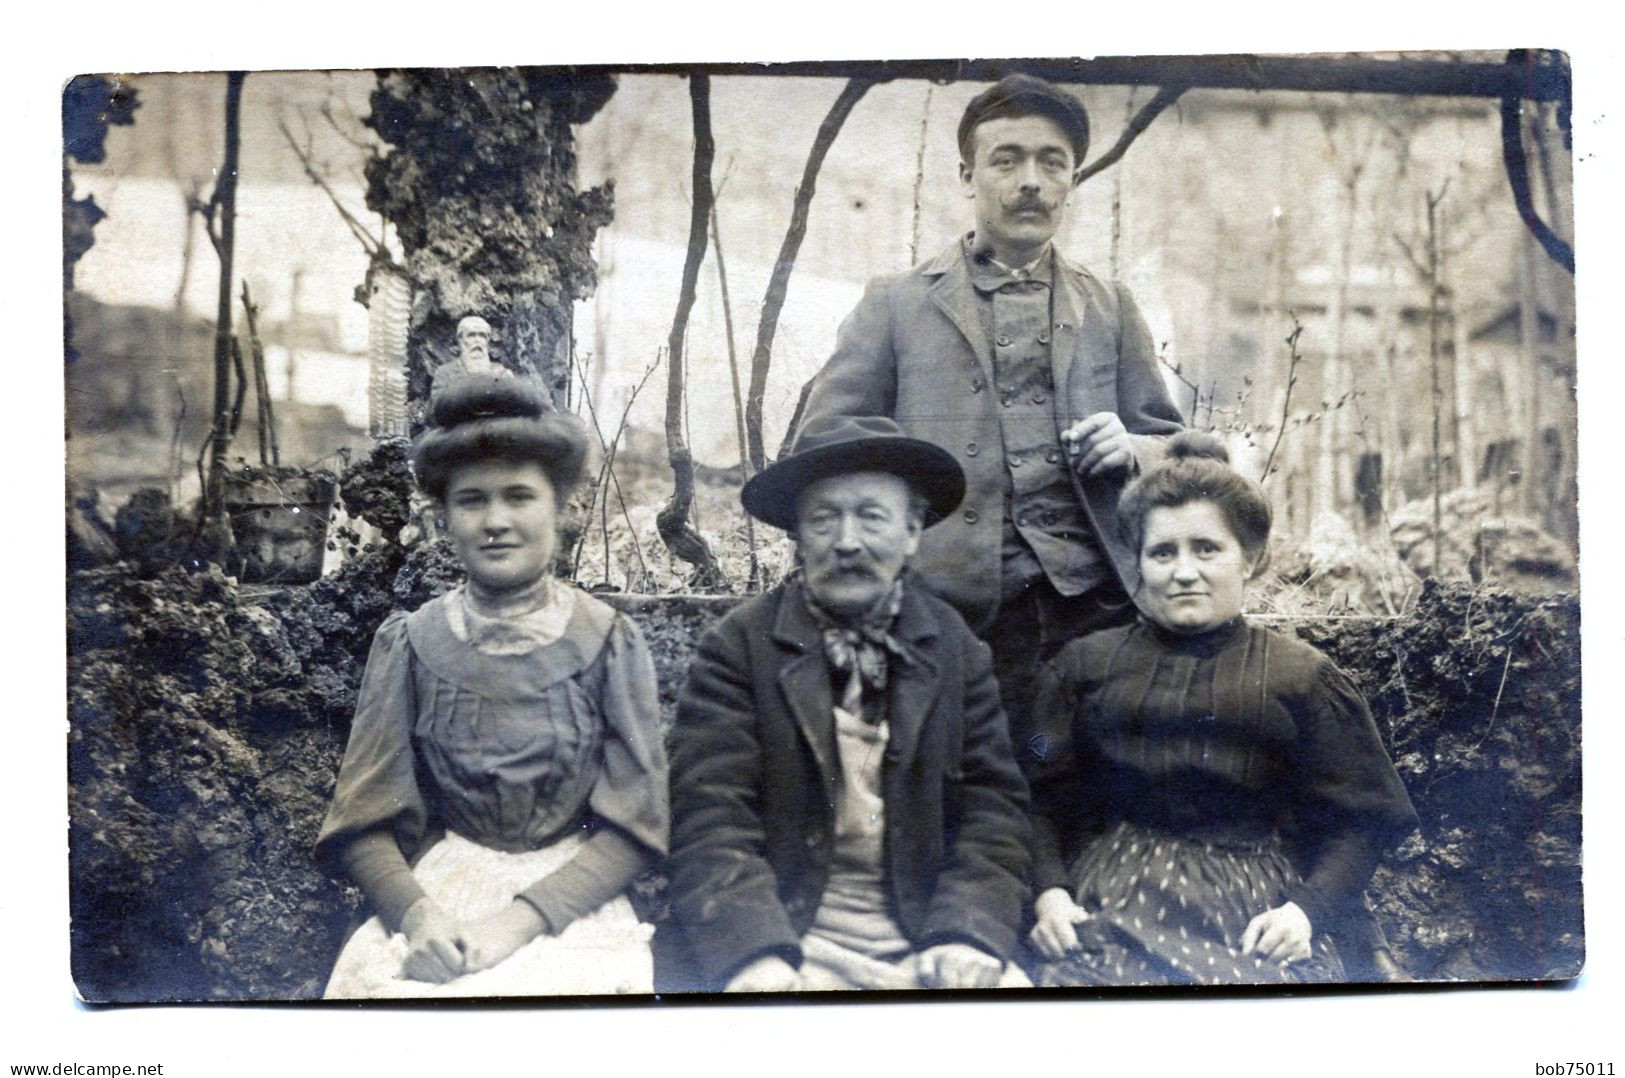 Carte Photo D'une Famille élégante Posant Dans Leurs Jardin Vers 1910 - Personnes Anonymes